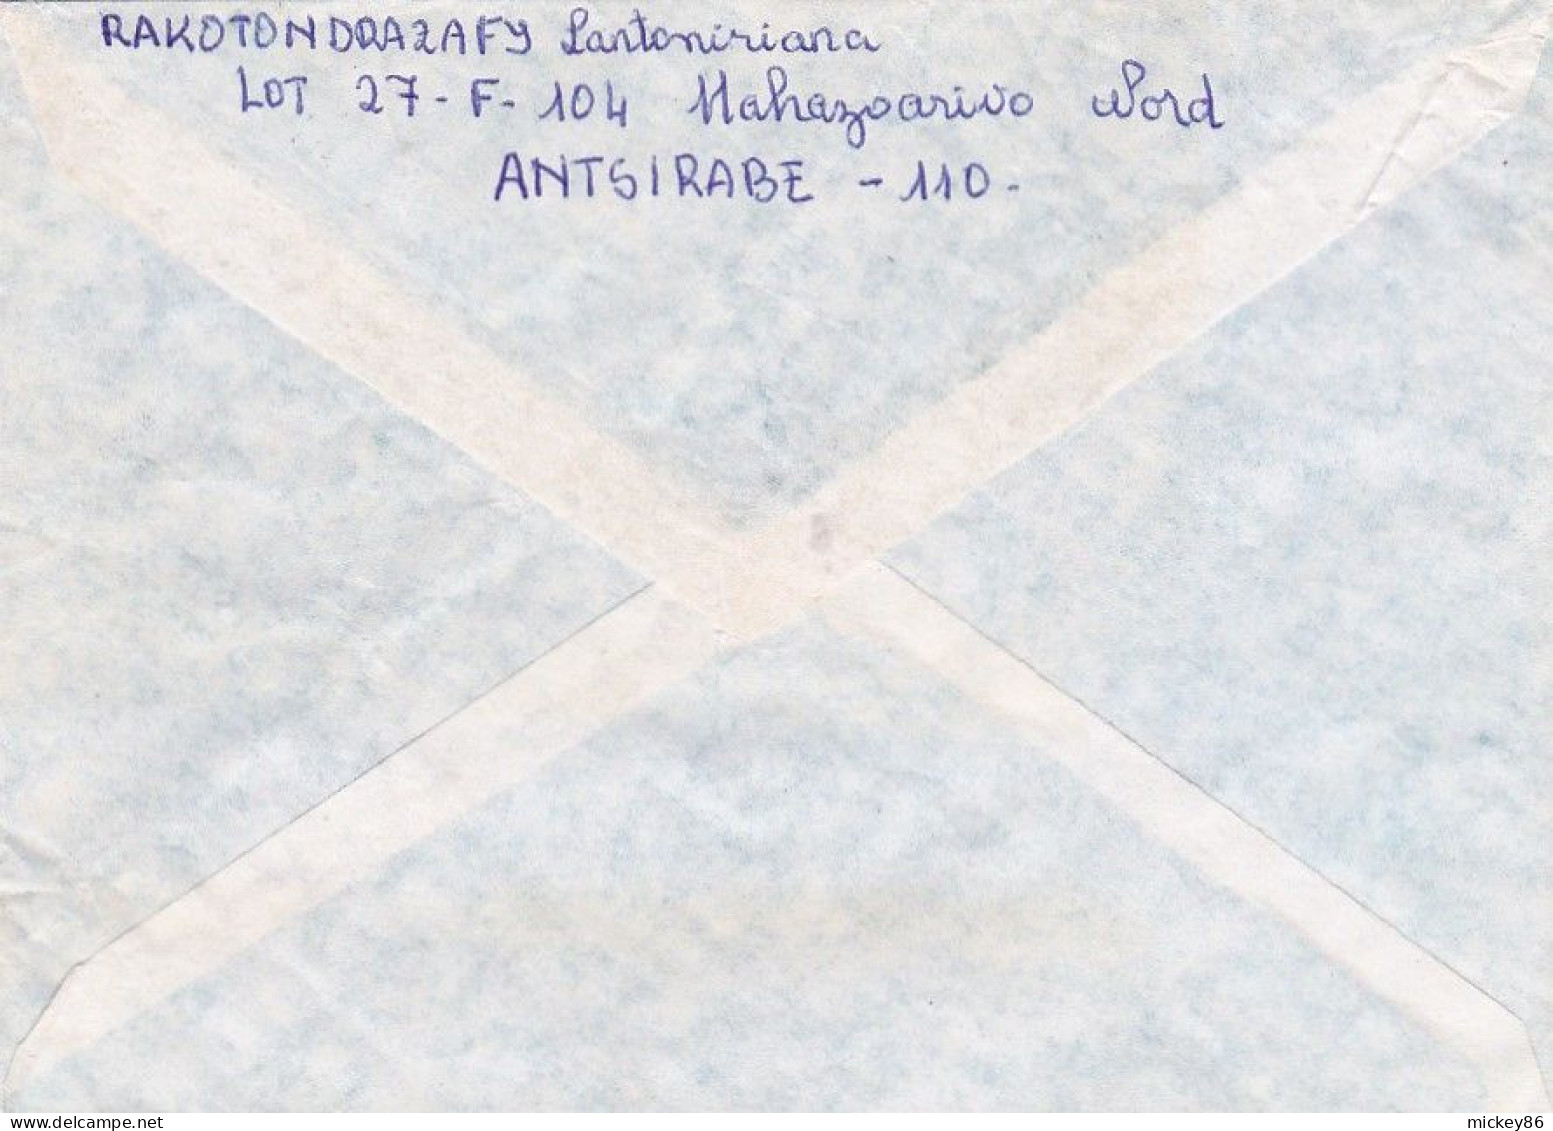 MADAGASCAR--1994- Lettre De ANTSIRABE à TANANARIVE ...timbre ( Pêche )  Seul Sur Lettre - Madagascar (1960-...)